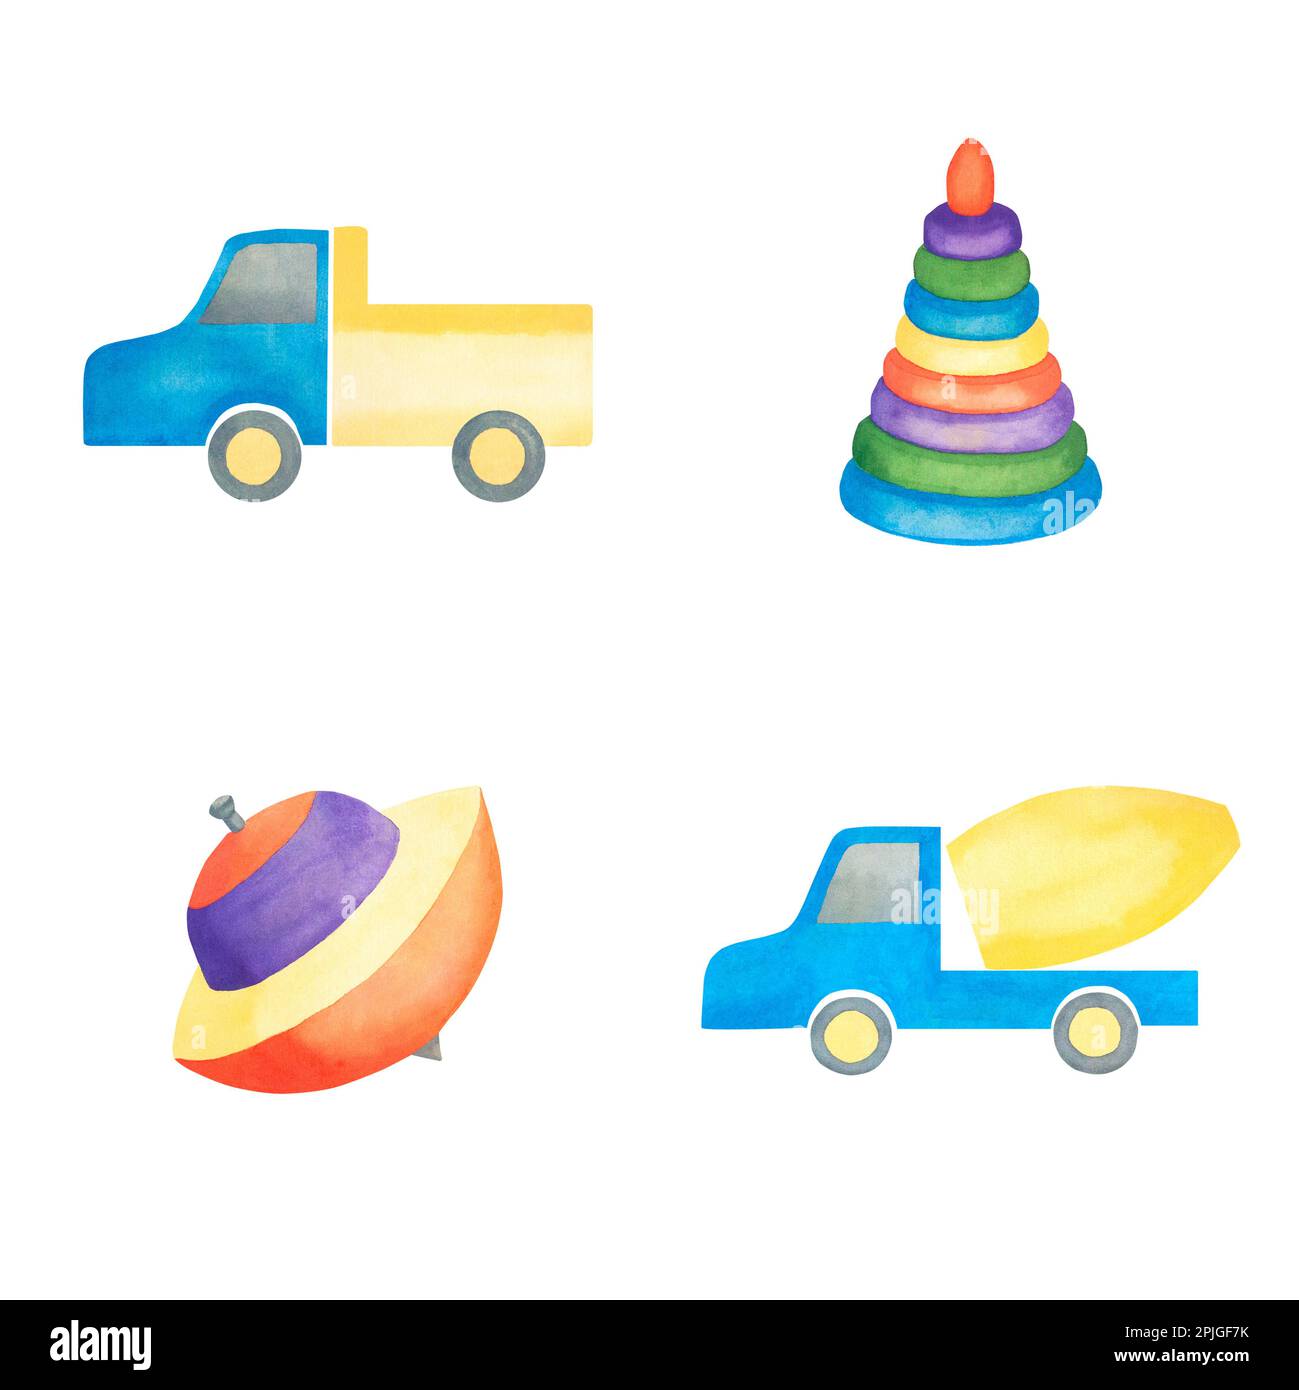 Kinderspielzeug. Aquarell-Darstellung eines Lastwagens, einer Pyramide, eines Wirbelsturms, eines Betonmischers. Illustration für Kinder. Separat auf weißem Hintergrund. Stockfoto